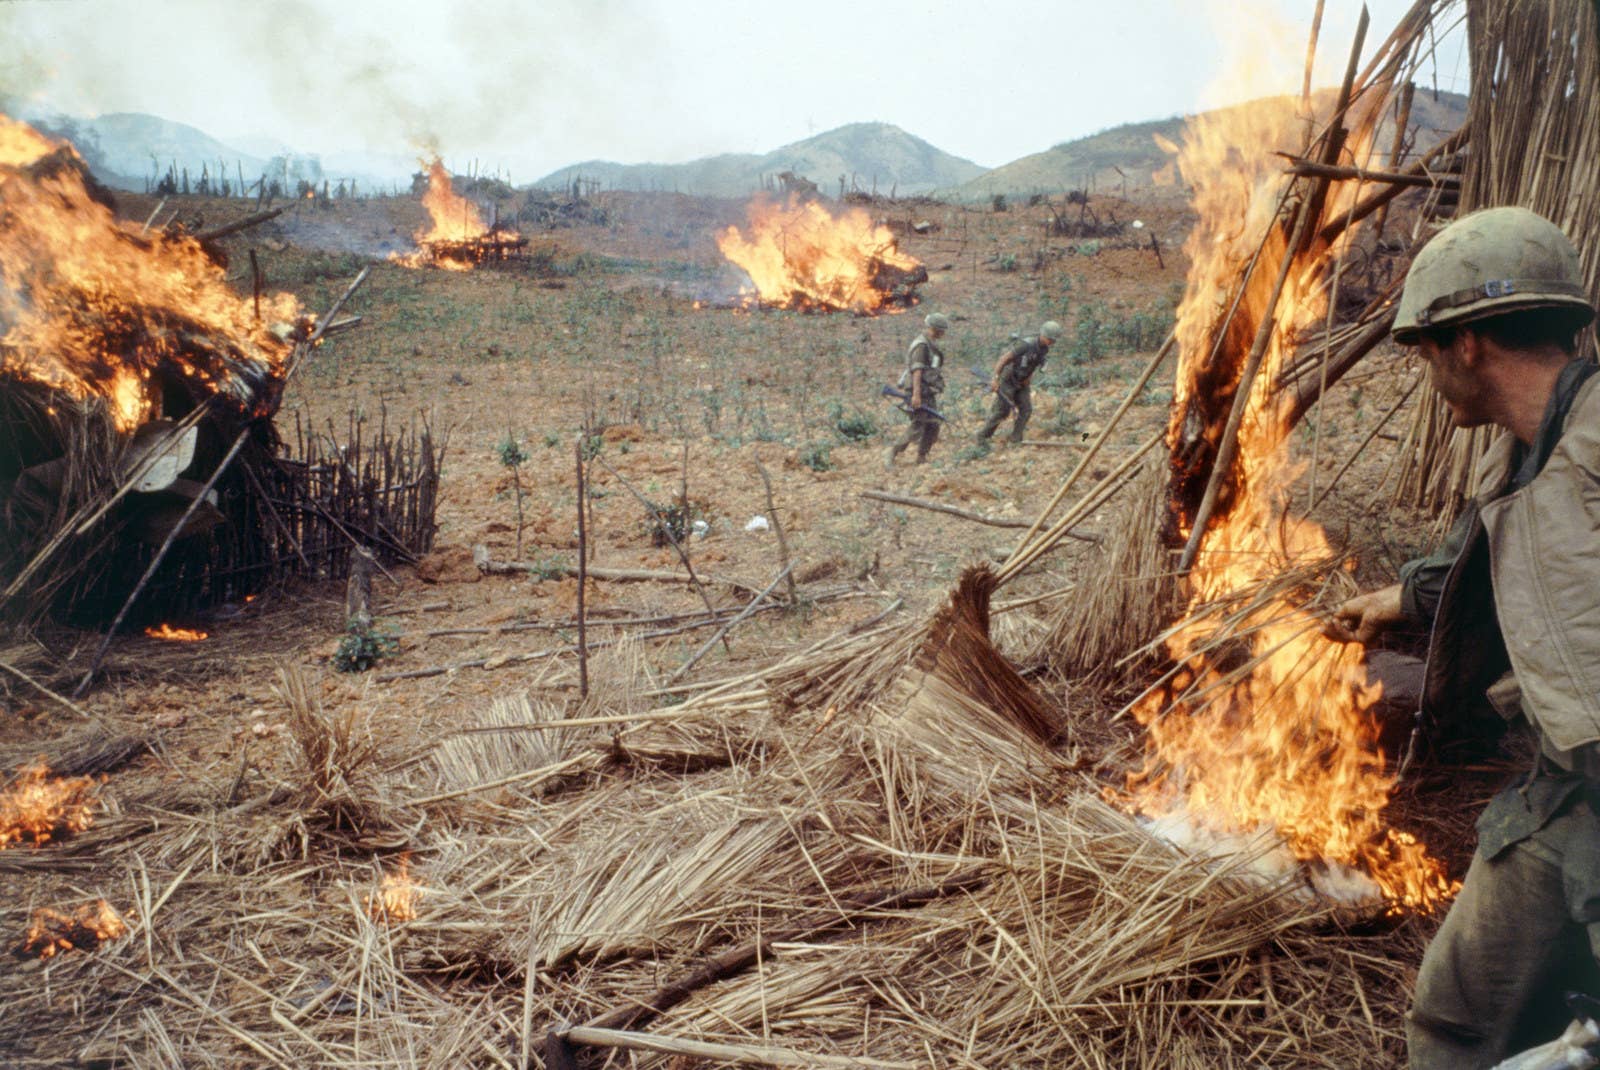 Soldados do Exército dos Estados Unidos queimam palha durante a Operação Pegasus da Batalha de Khe Sanh, em abril de 1968.